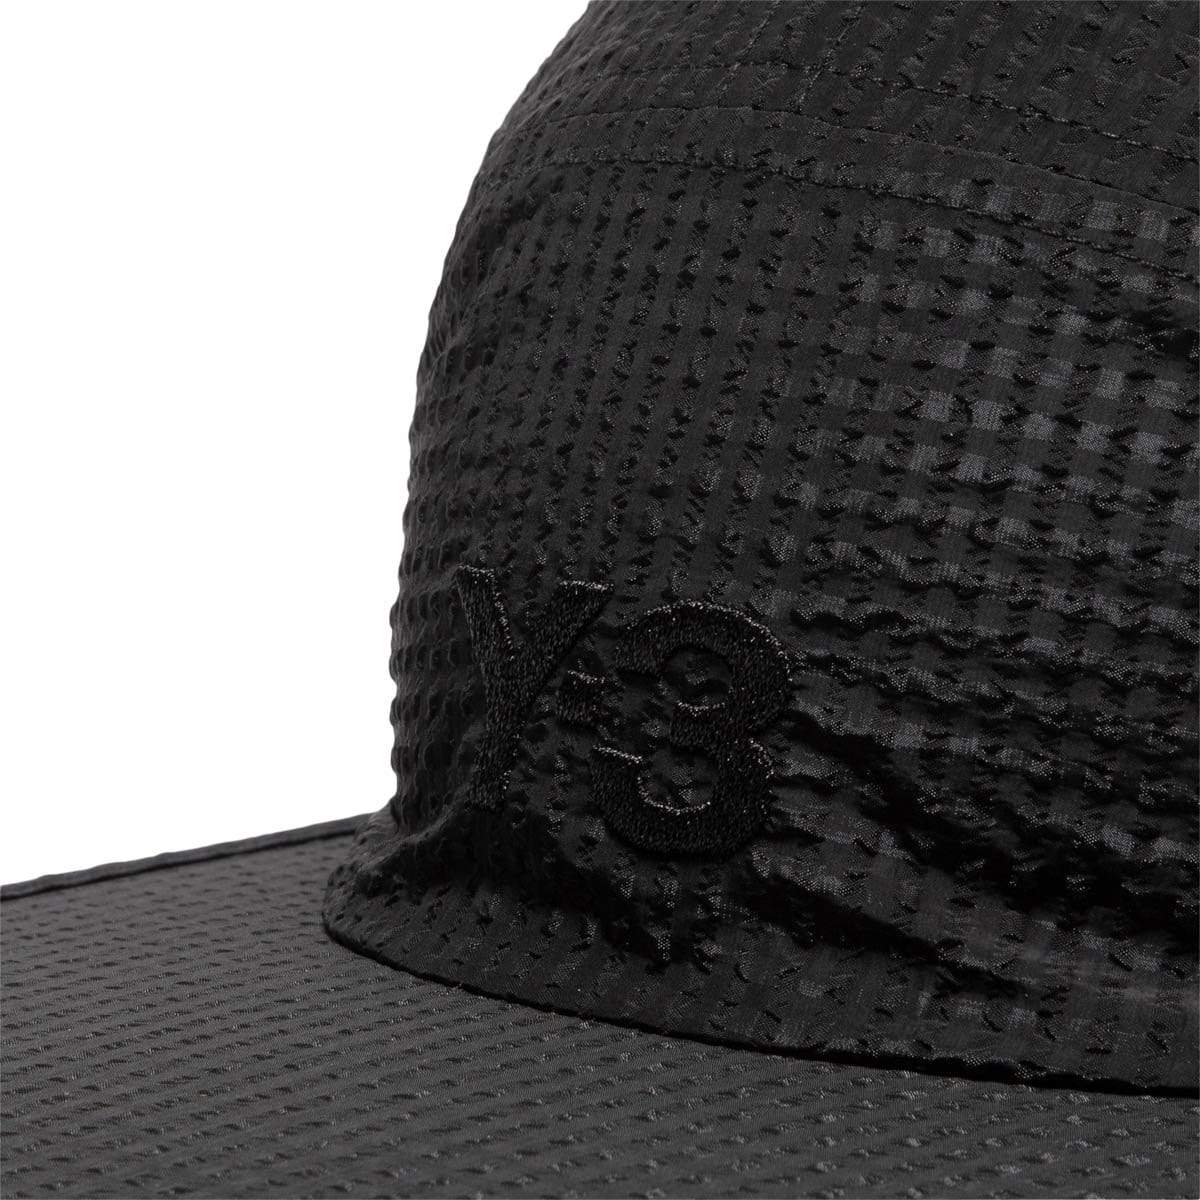 adidas Y-3 Headwear BLACK / O/S Y-3 CH2 VENTILATION CAP